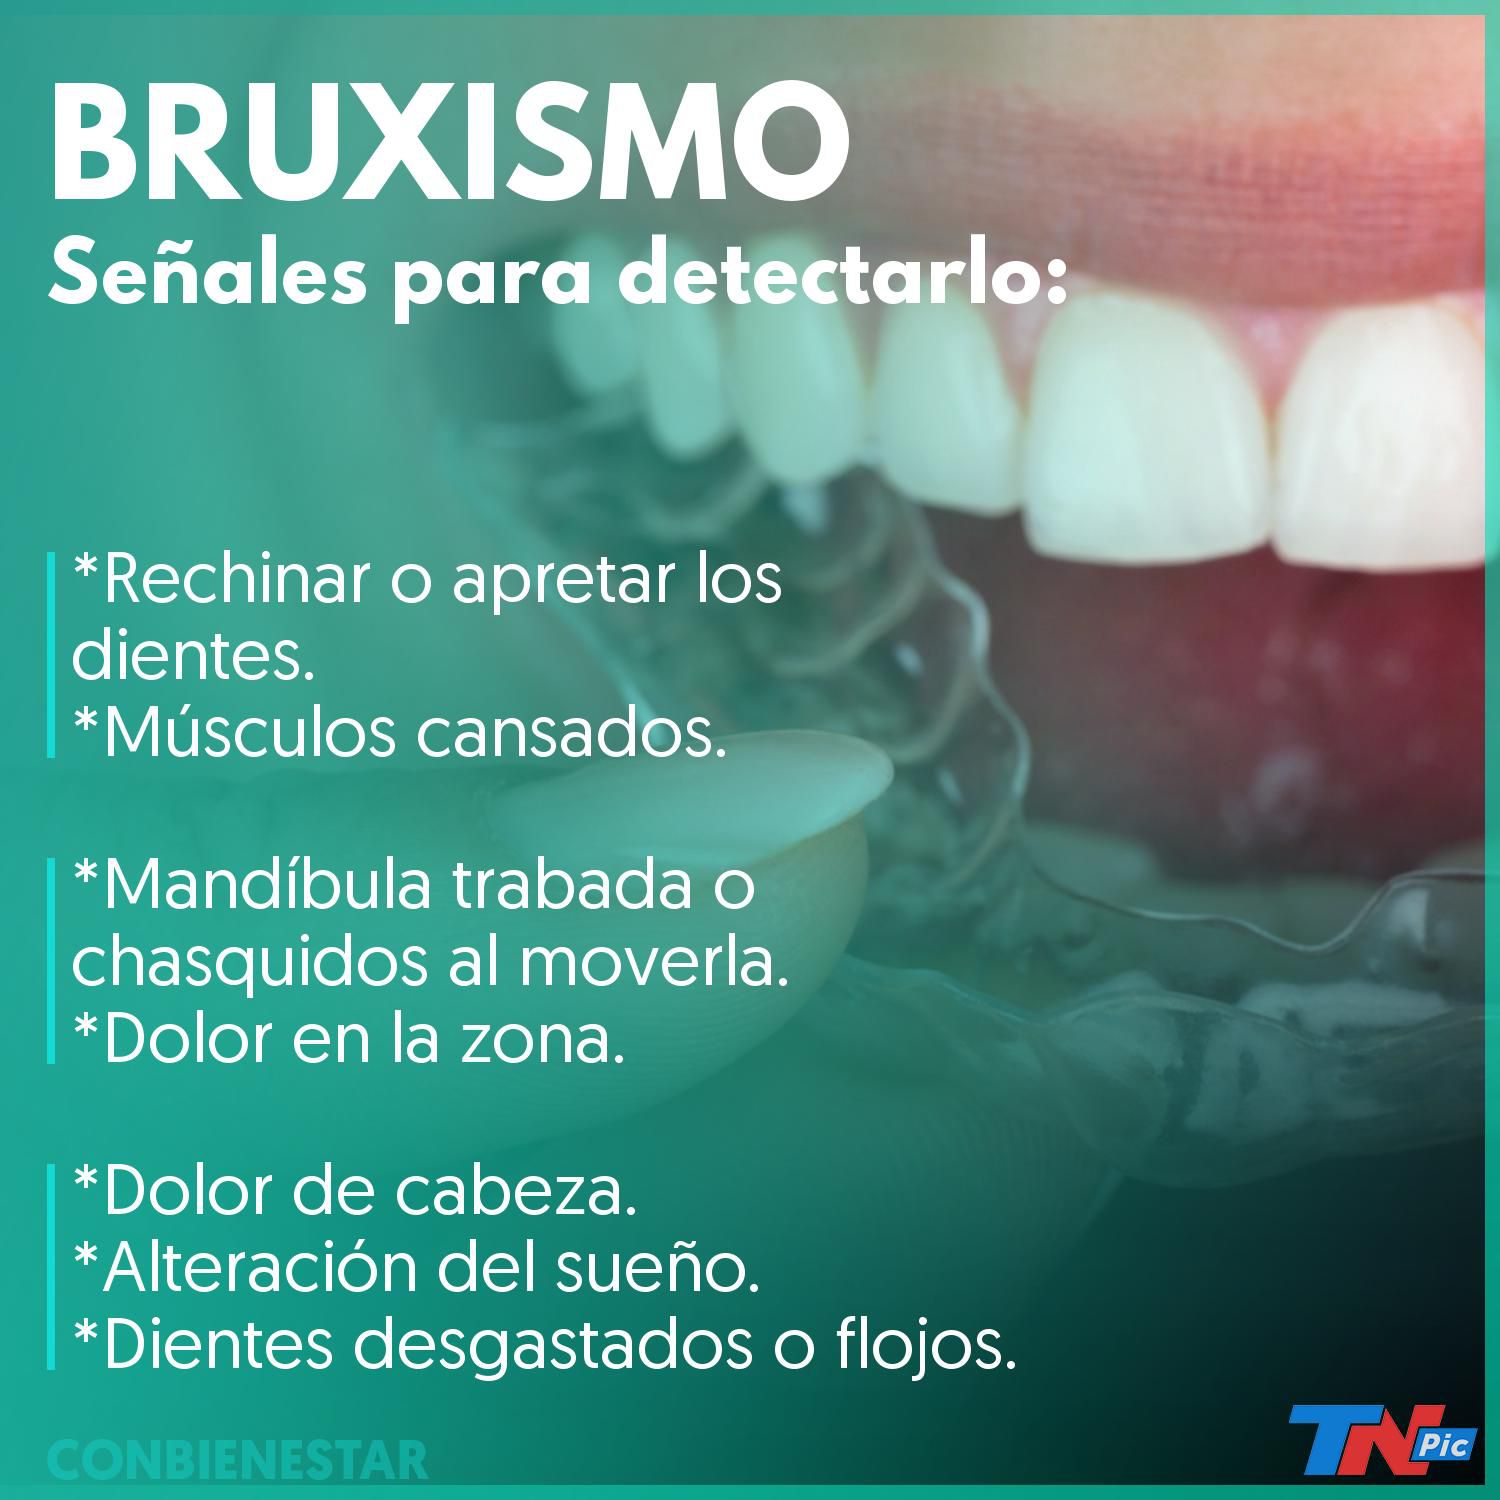 Clinica Corica - Bruxismo, para que no te suenen los dientes en la noche.  El bruxismo es apretar o rechinar los dientes causando desgaste dental. Se  hace de manera inconsciente de noche